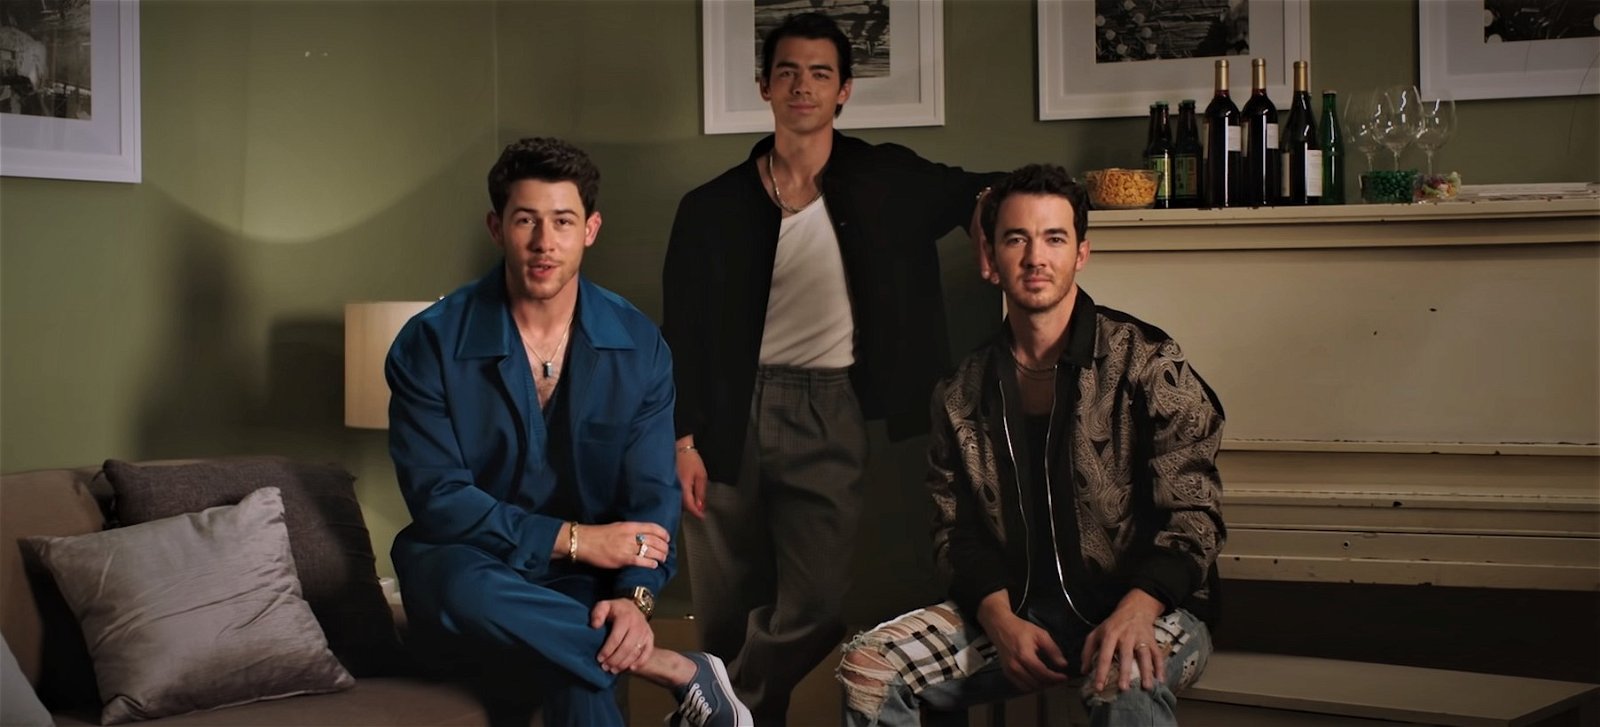 Jonas Brothers blir roastade på Netflix